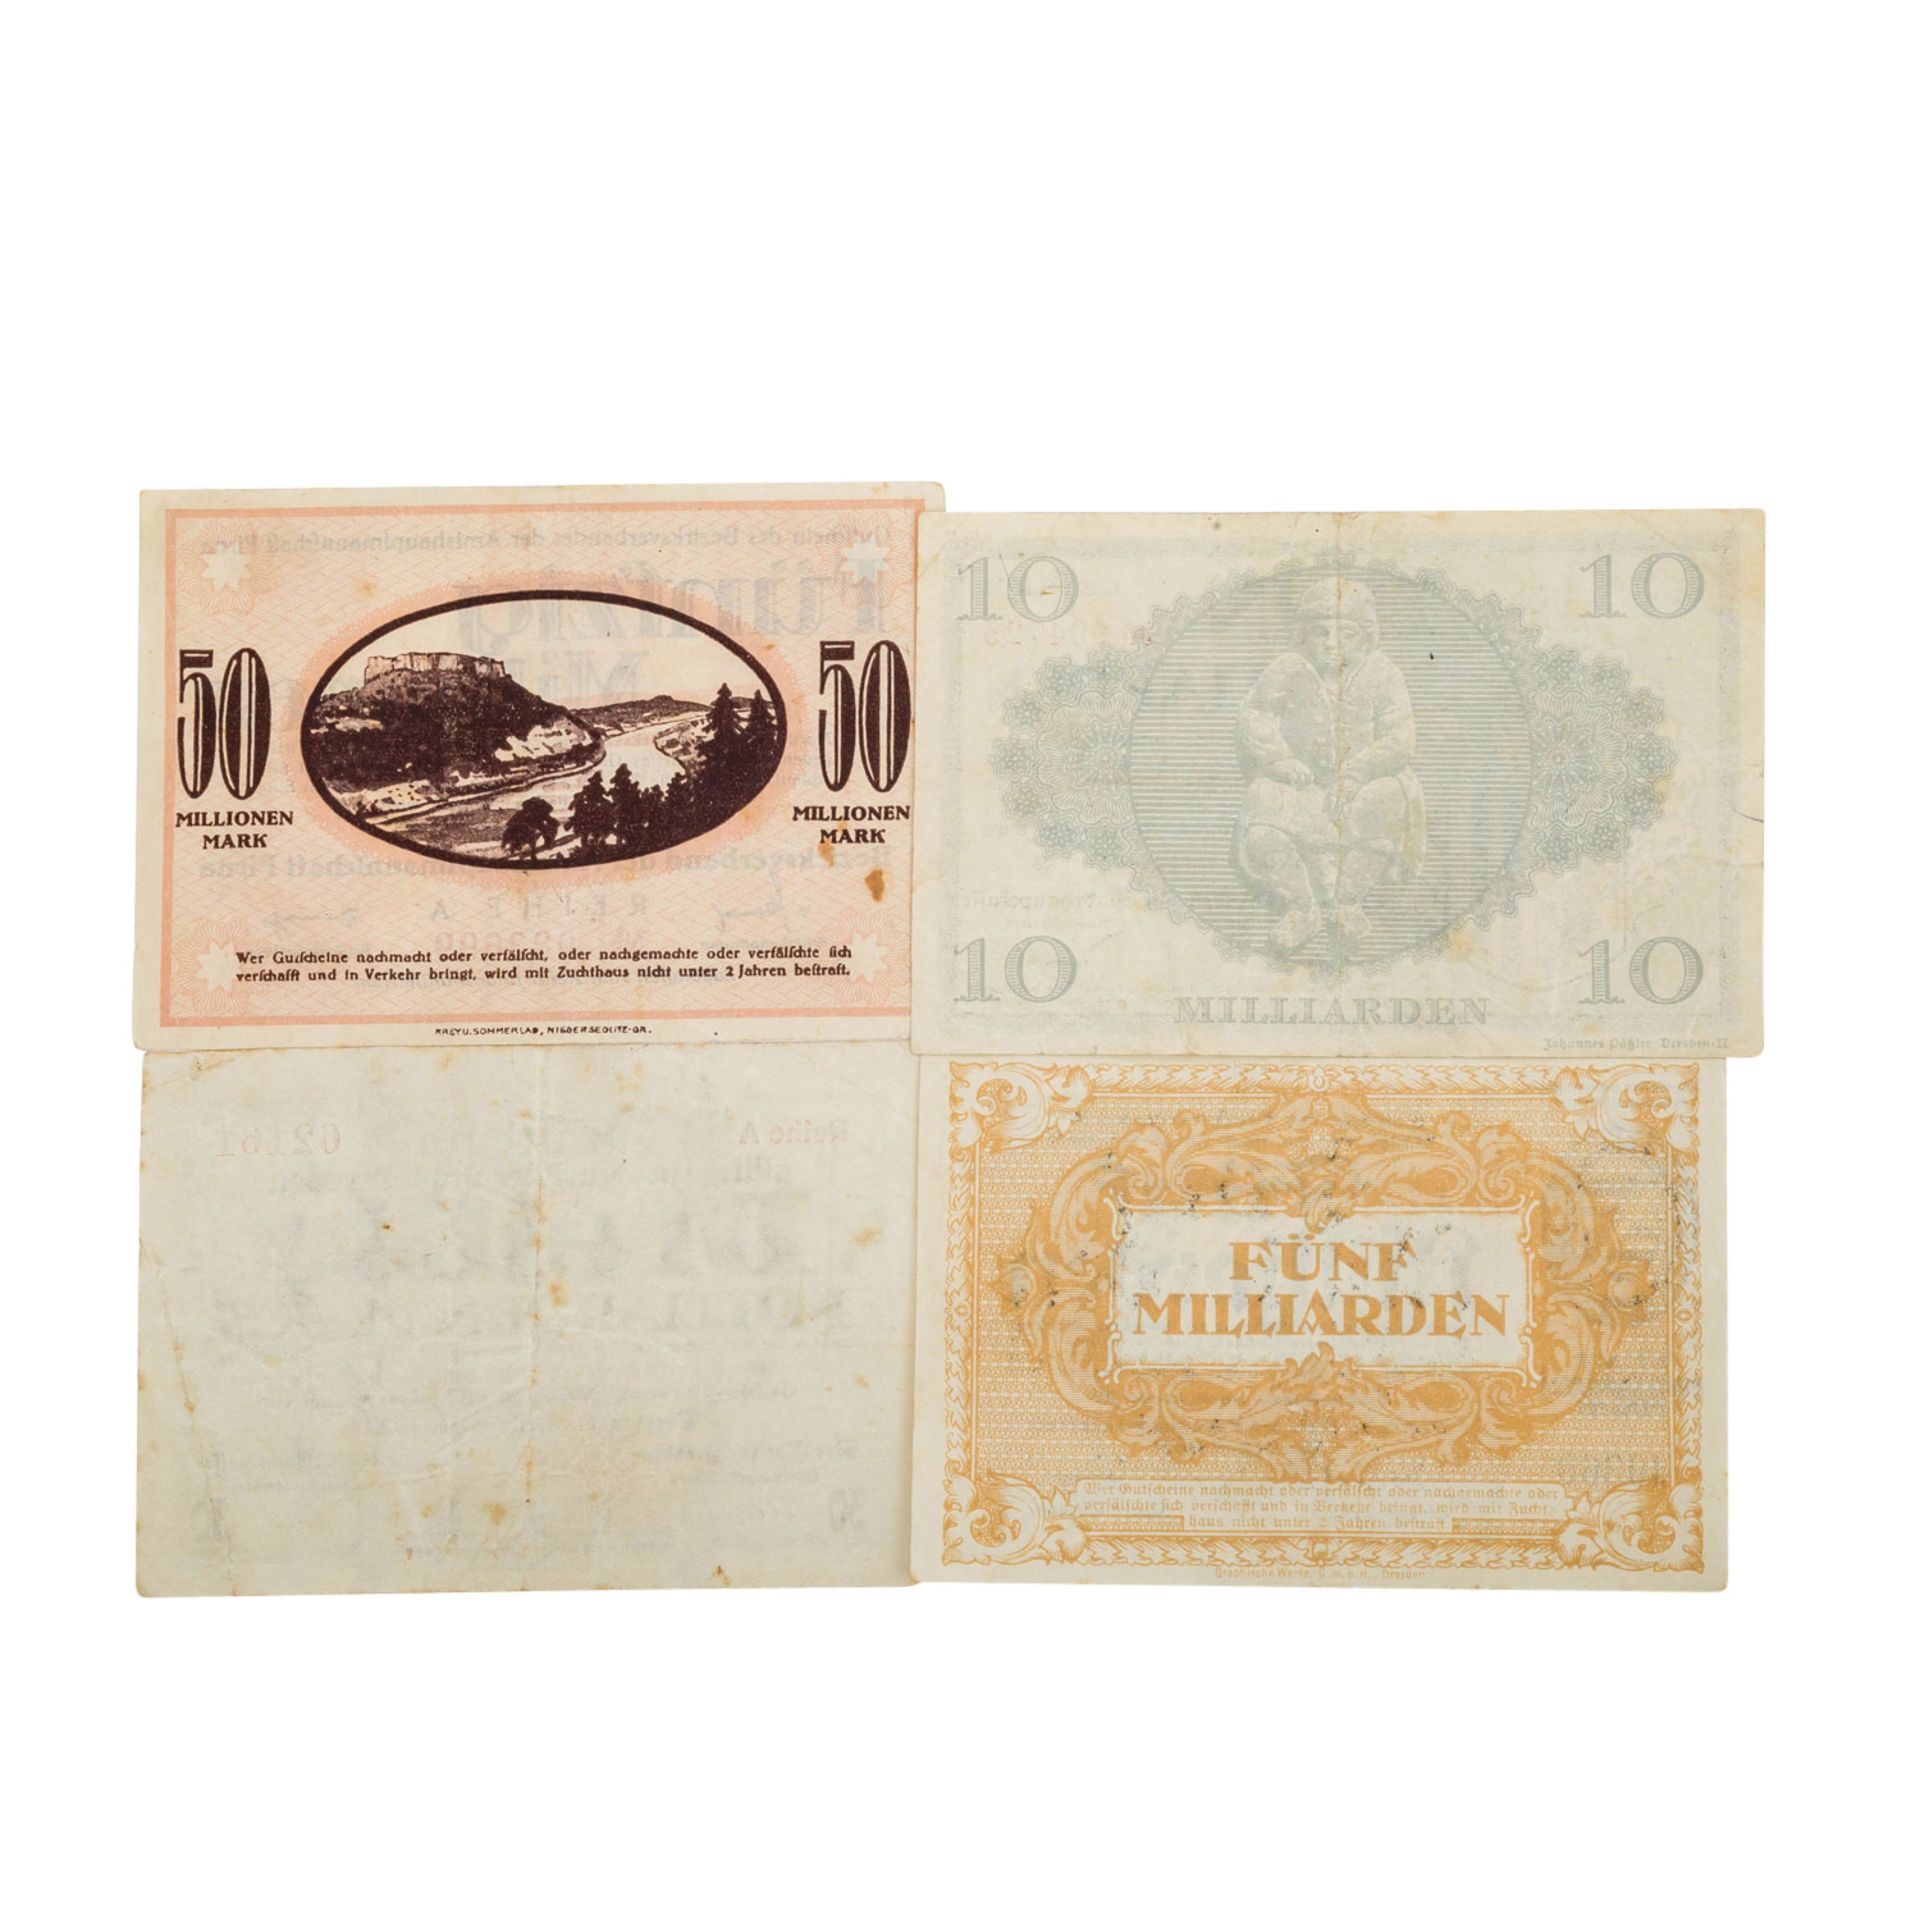 Banknoten der Weimarer Republik, Deutschland 1.Hälfte 20.Jh. - - Bild 7 aus 7